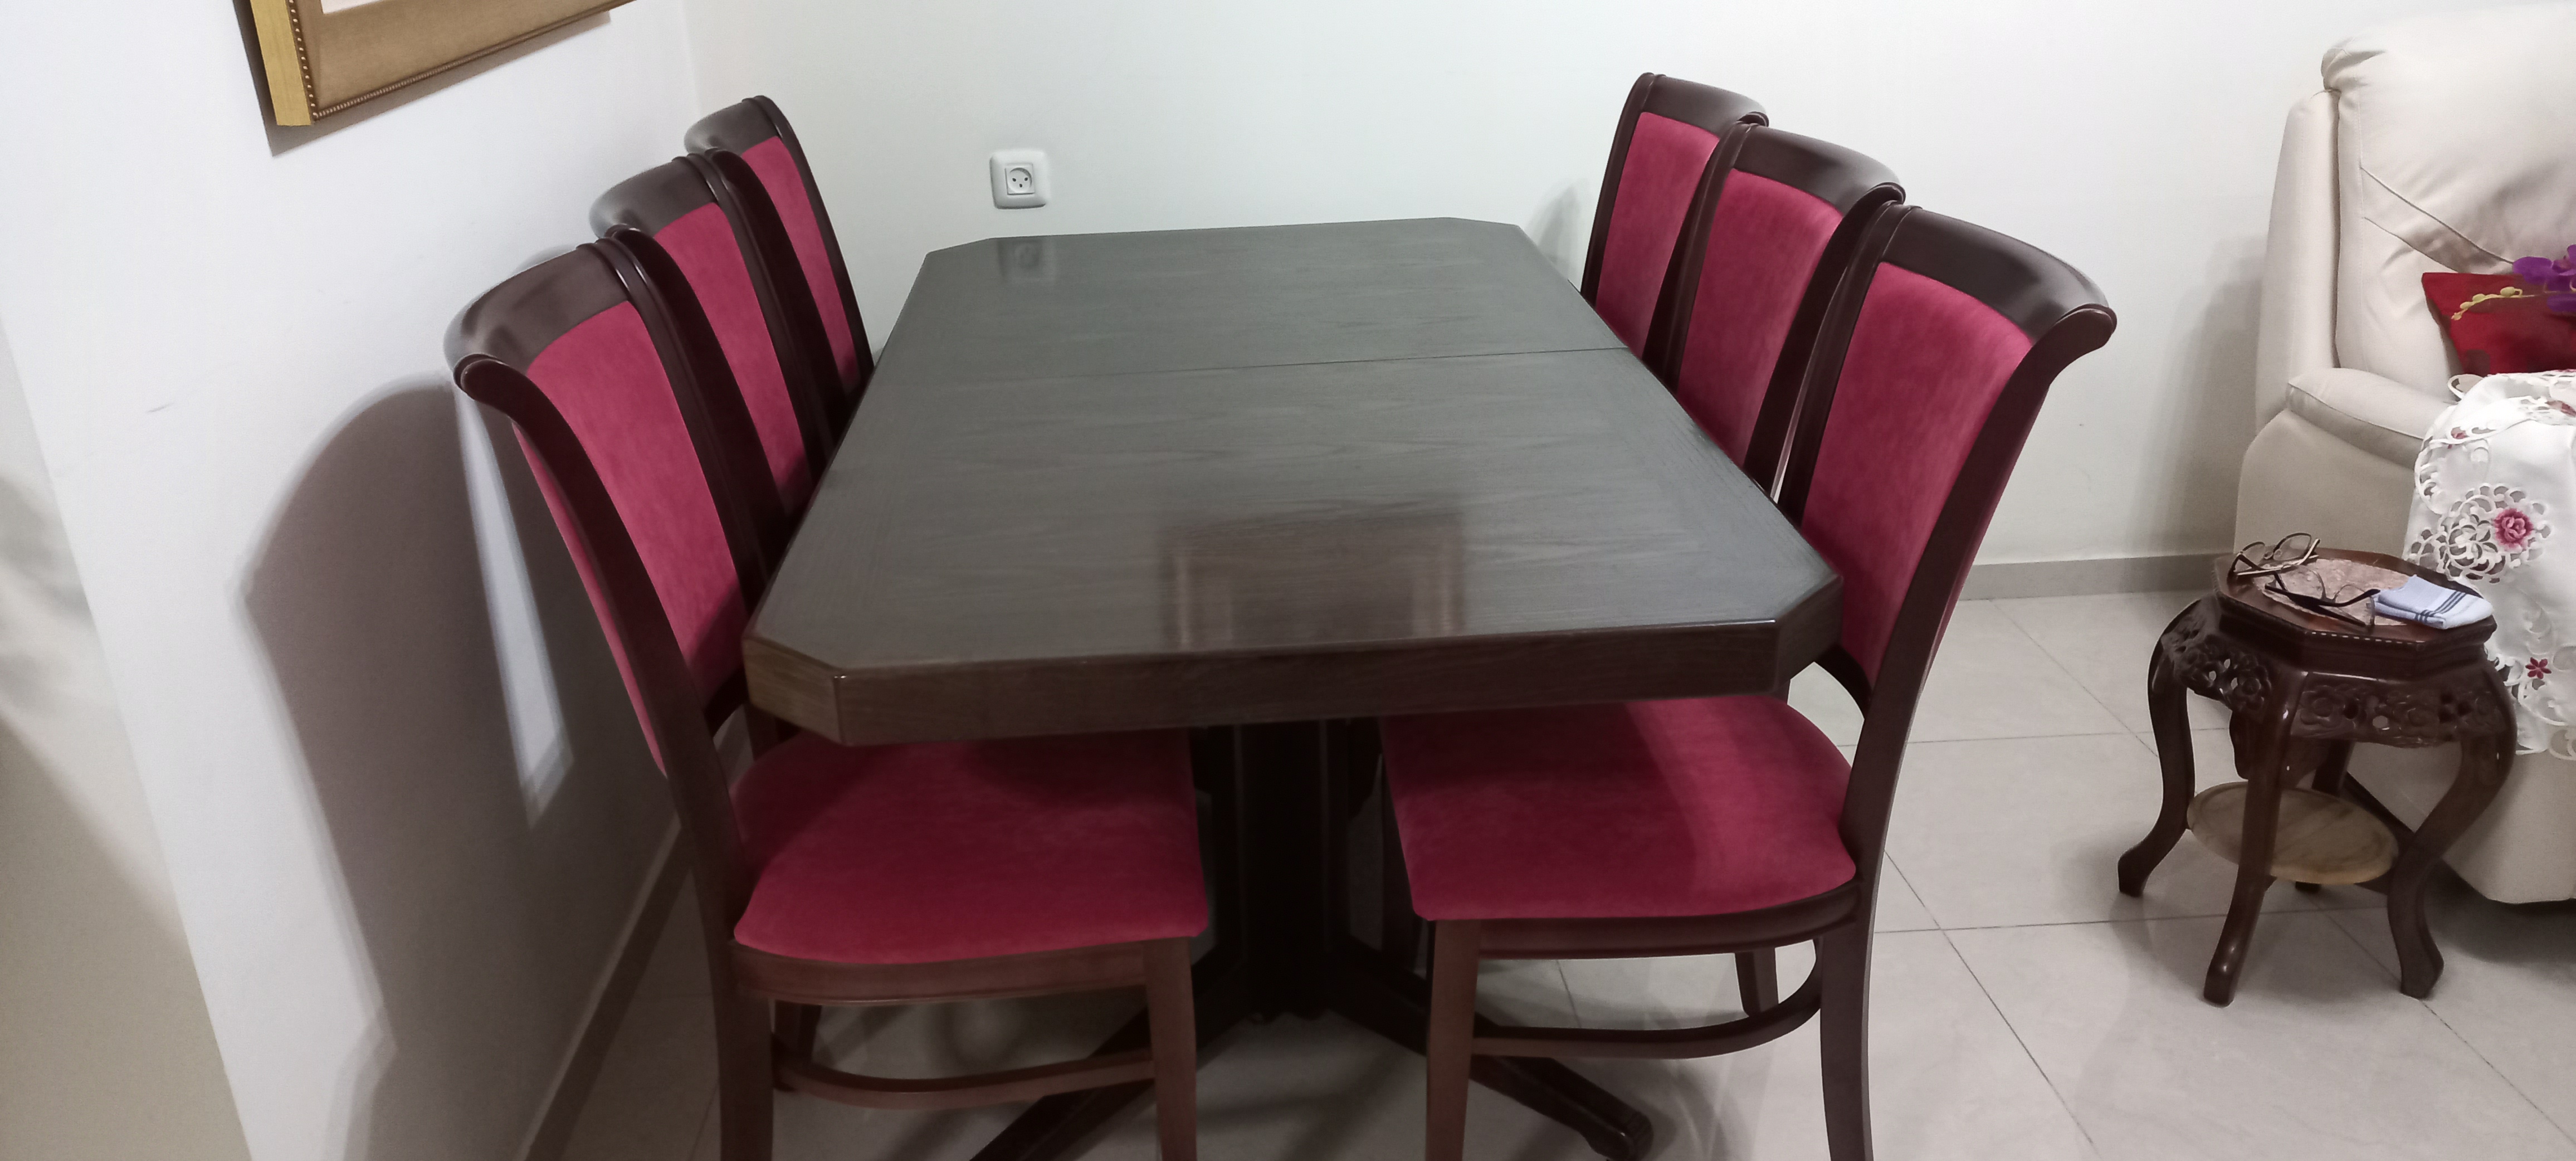 תמונה 1 ,שולחן אוכל +6כסאות לפתיחה  למכירה בפתח תקווה ריהוט  פינת אוכל